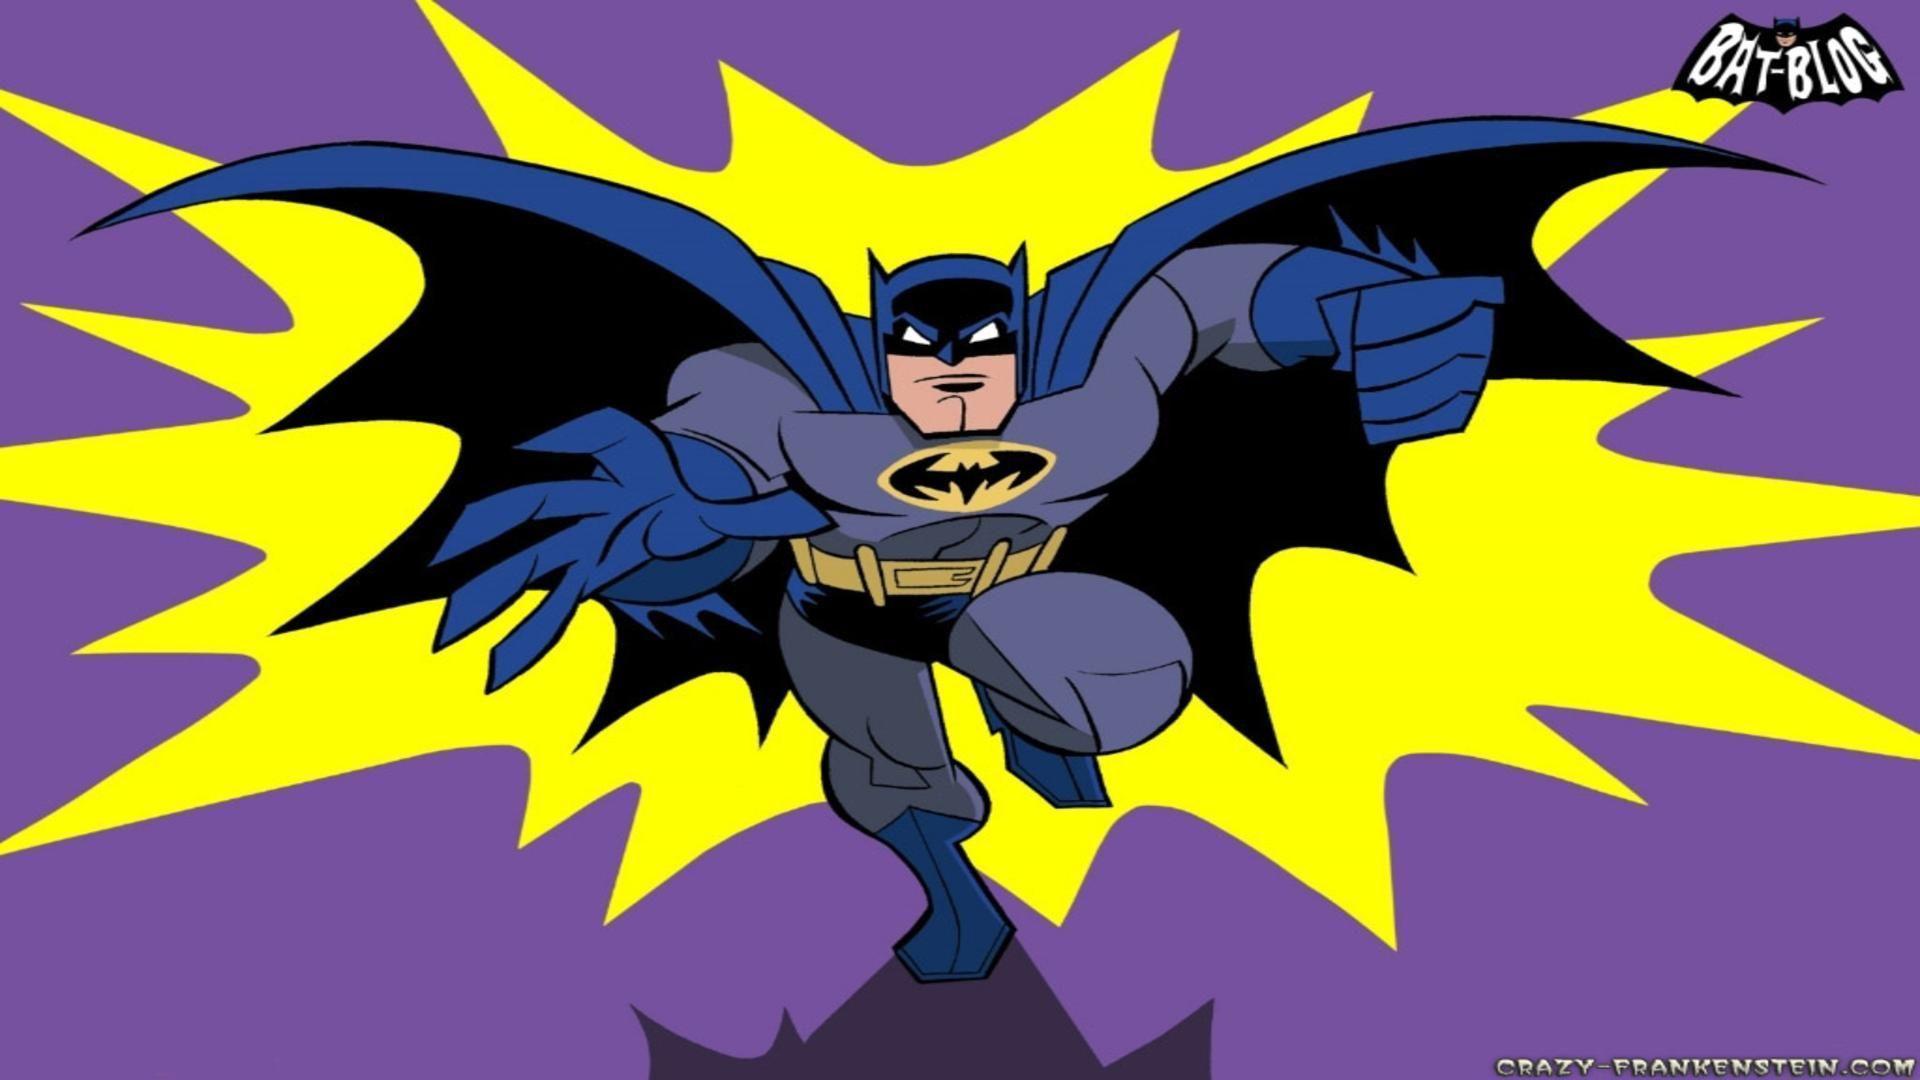 Batman Cartoon Wallpapers - Wallpaper Cave